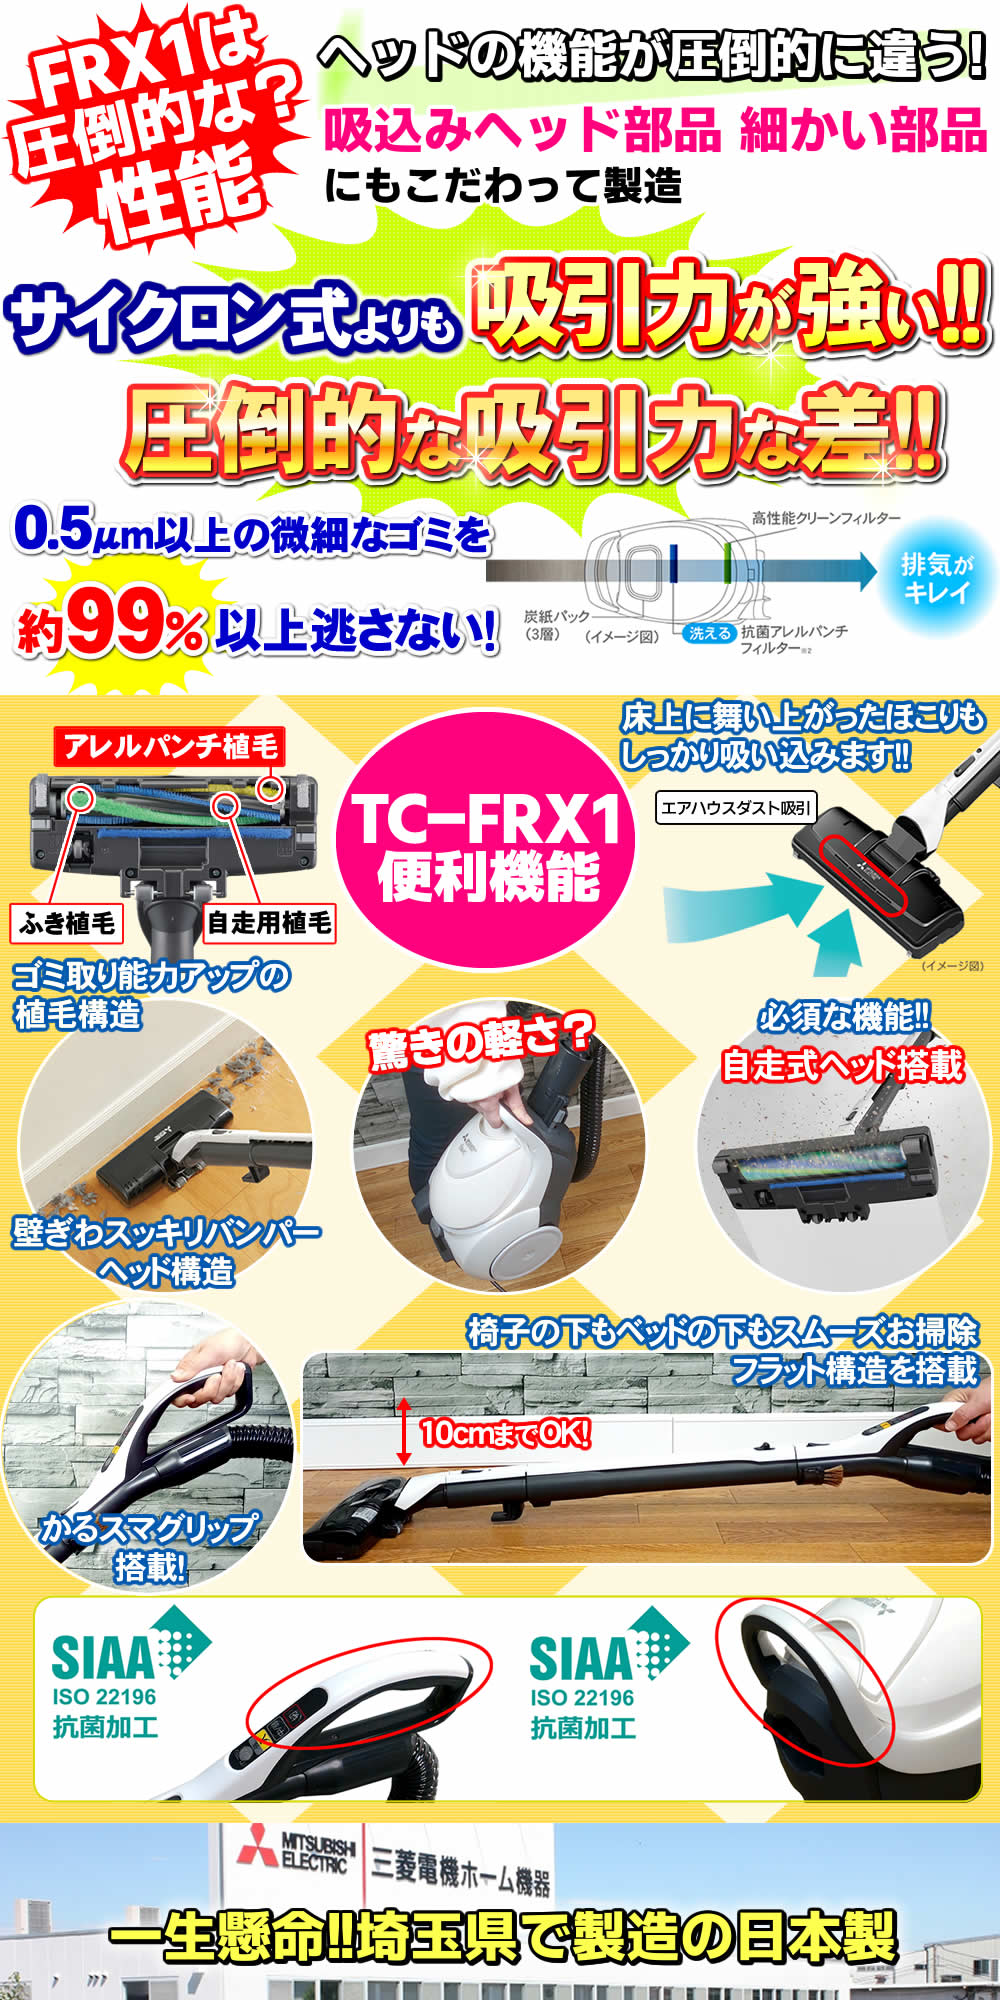 三菱 掃除機 紙パック式 吸引力 コードレス掃除機との比較で吸引力が圧倒的に強い 最強クラスTC-FRX1の便利機能